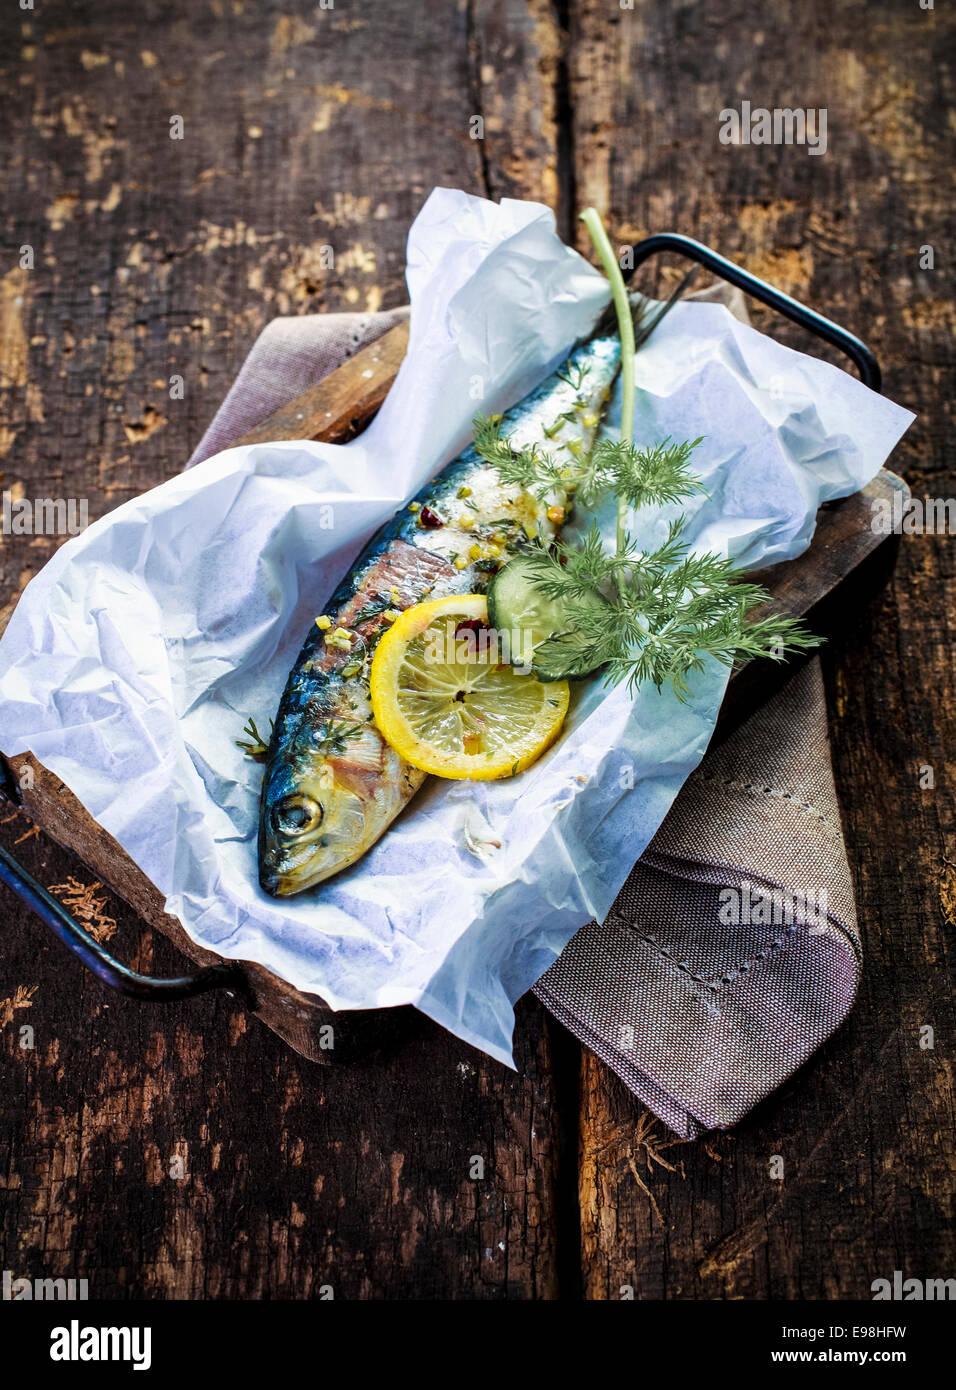 Una deliciosa cena de marisco de pescado entero al horno con un condimento de surtido de hierbas frescas, limón y especias, vista desde arriba sobre una encimera de madera rústica Foto de stock